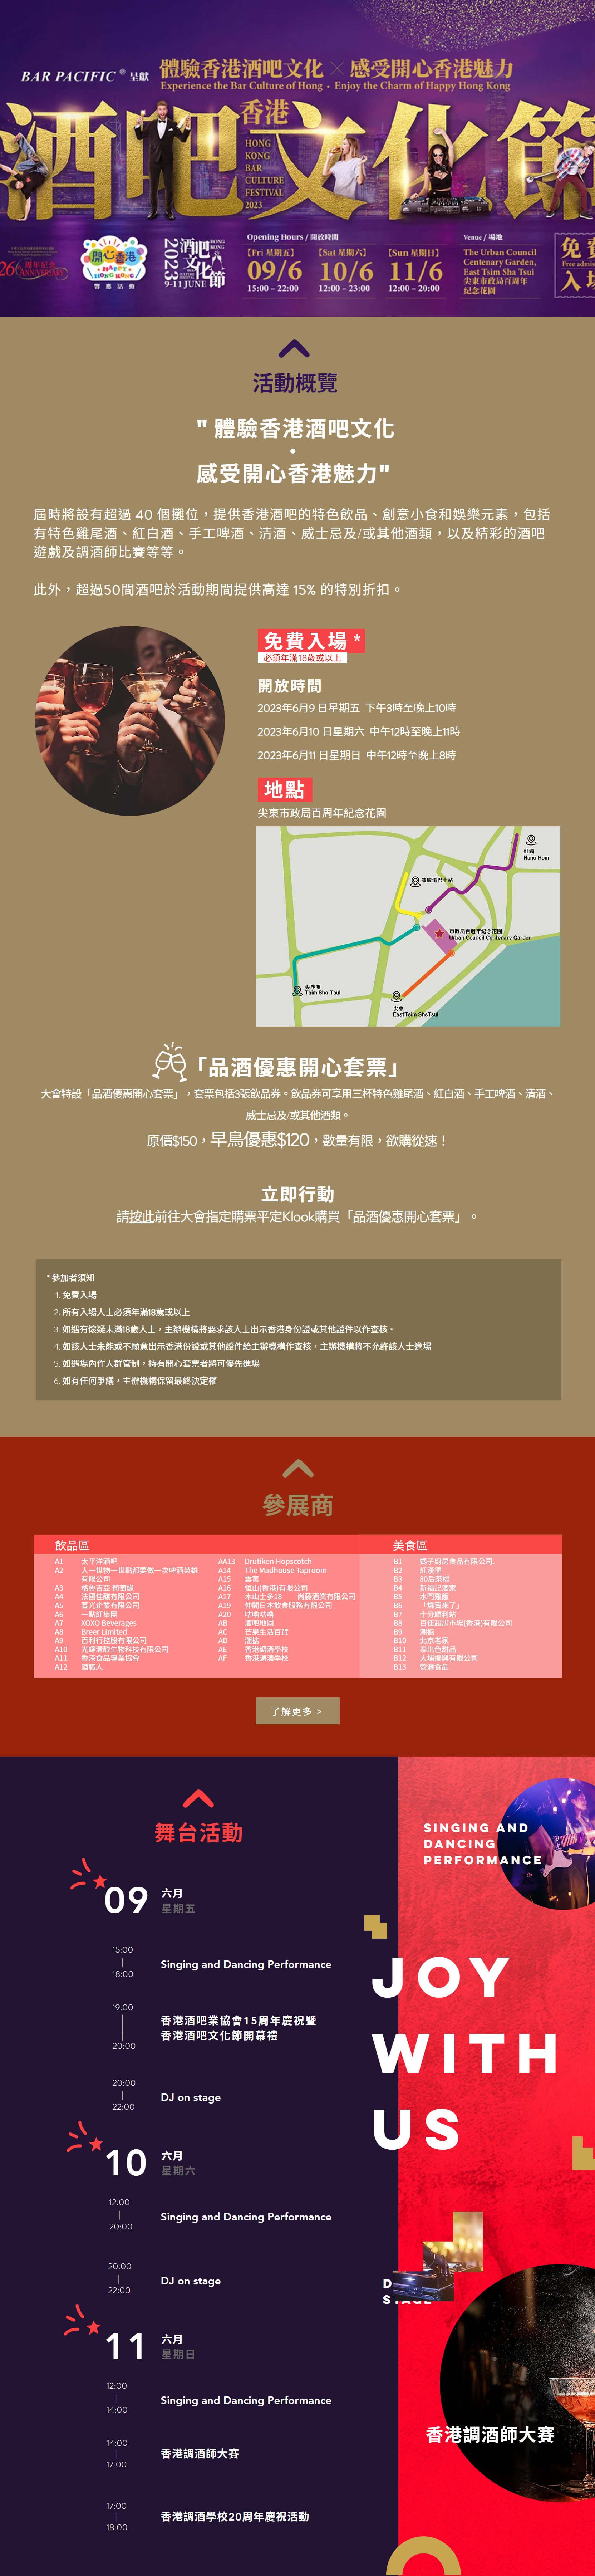 香港酒吧文化節免費入場優惠@尖東(至23年6月11日)圖片1